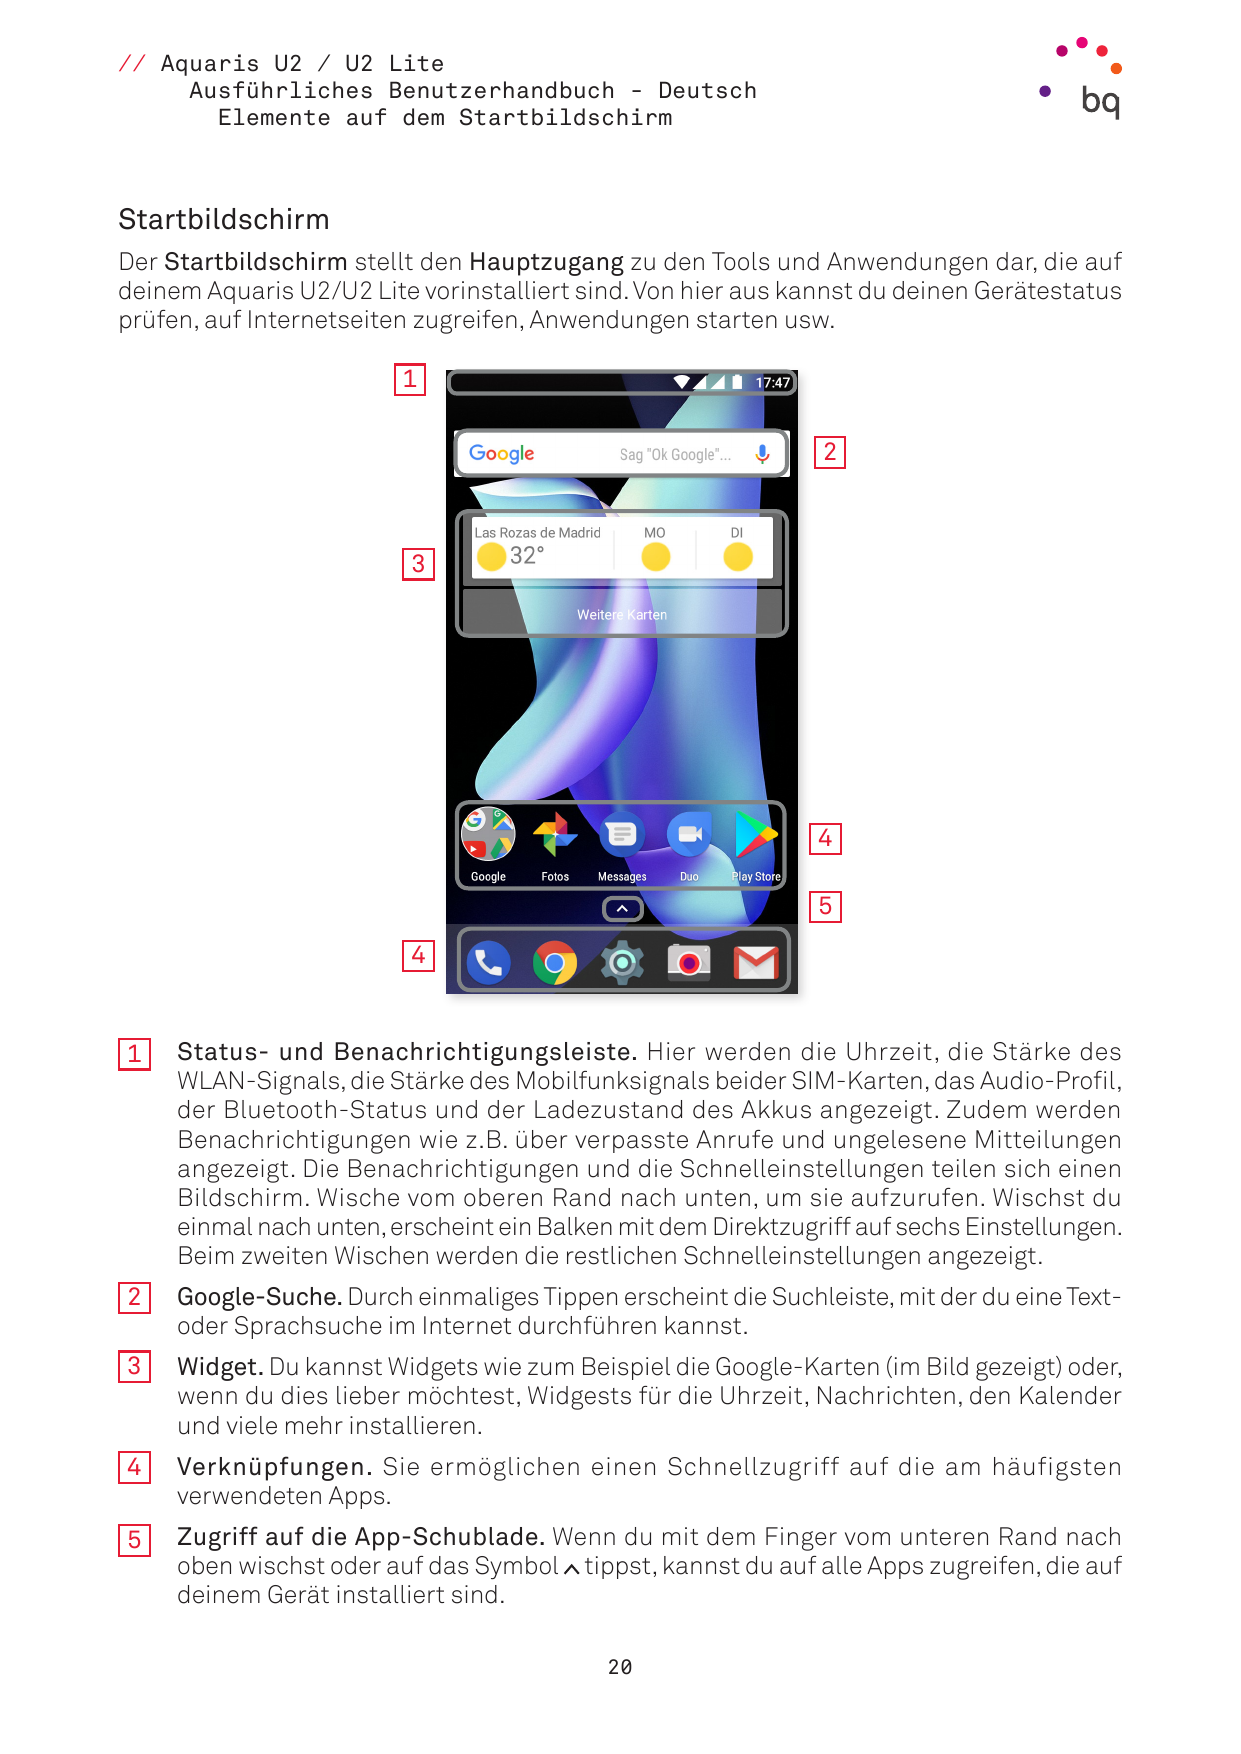 // Aquaris U2 / U2 LiteAusführliches Benutzerhandbuch - DeutschElemente auf dem StartbildschirmStartbildschirmDer Startbildschir